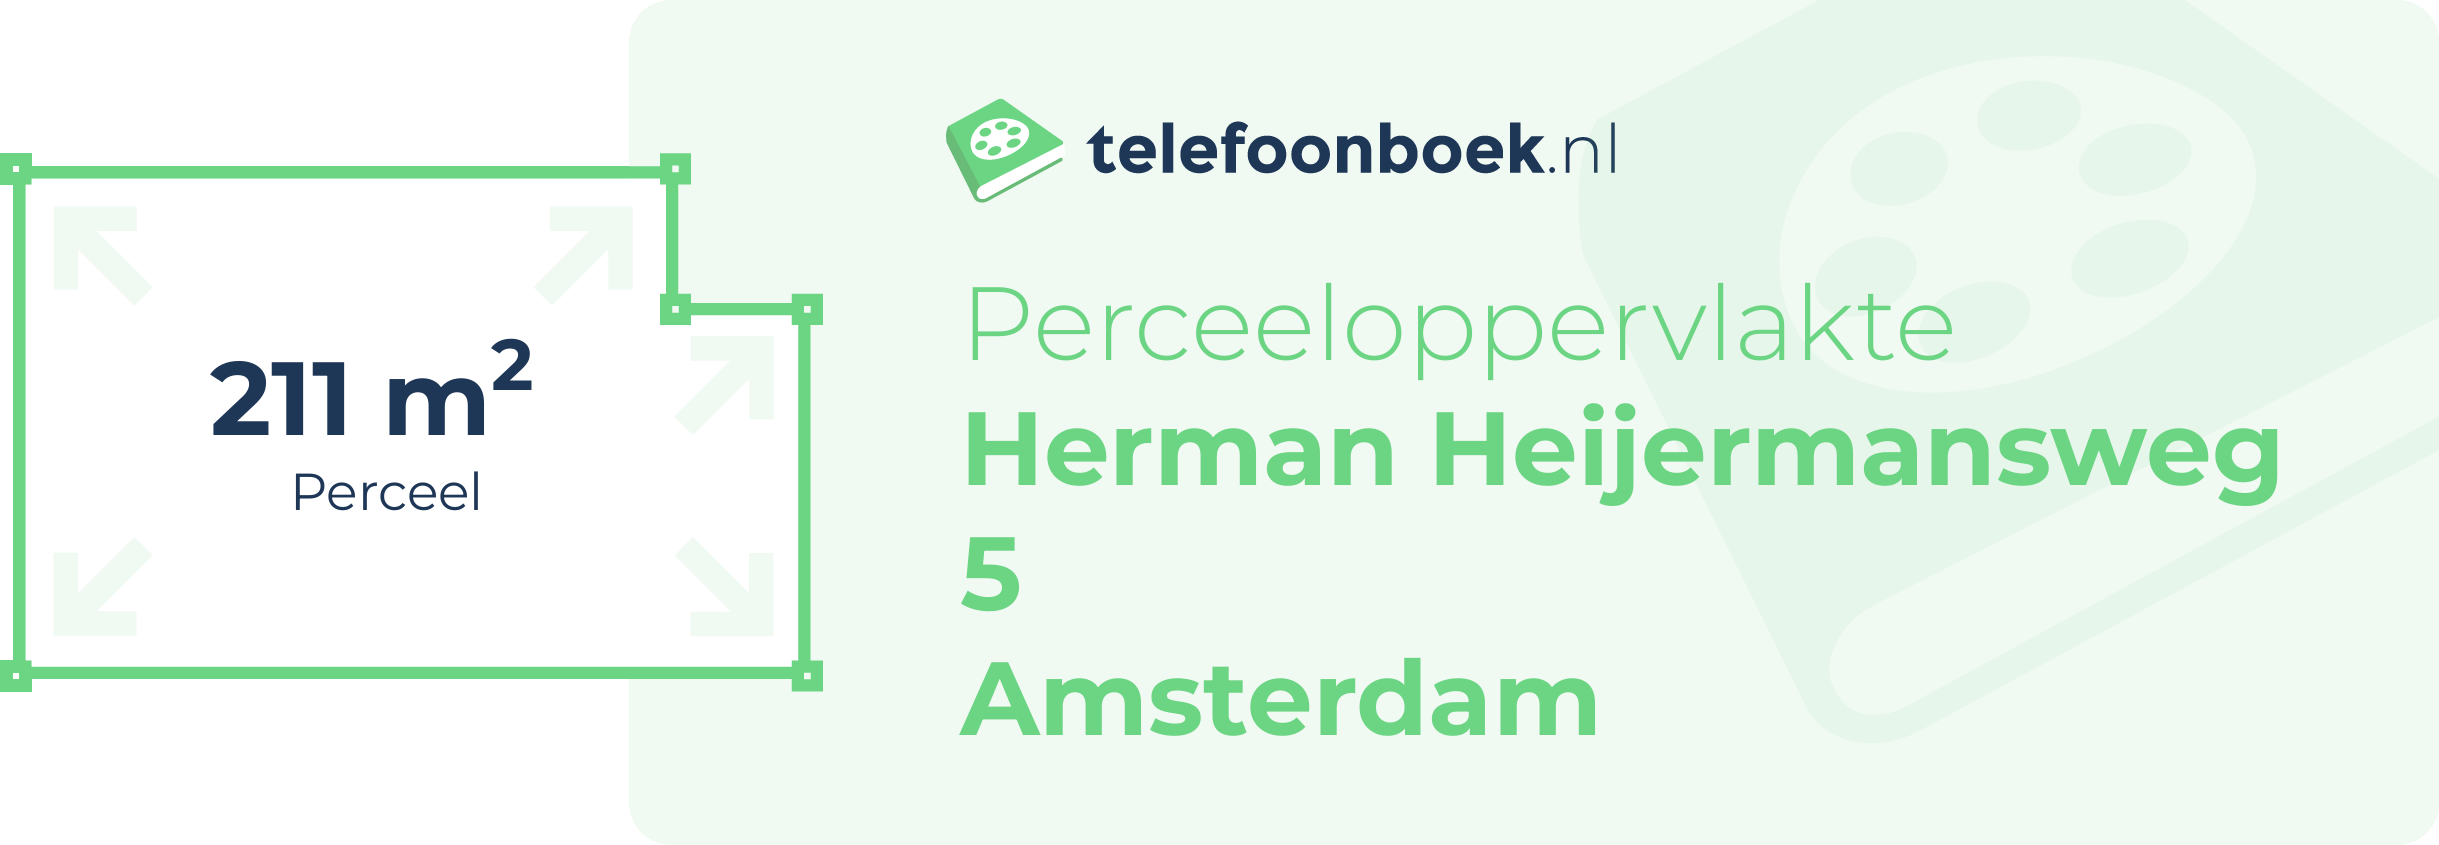 Perceeloppervlakte Herman Heijermansweg 5 Amsterdam